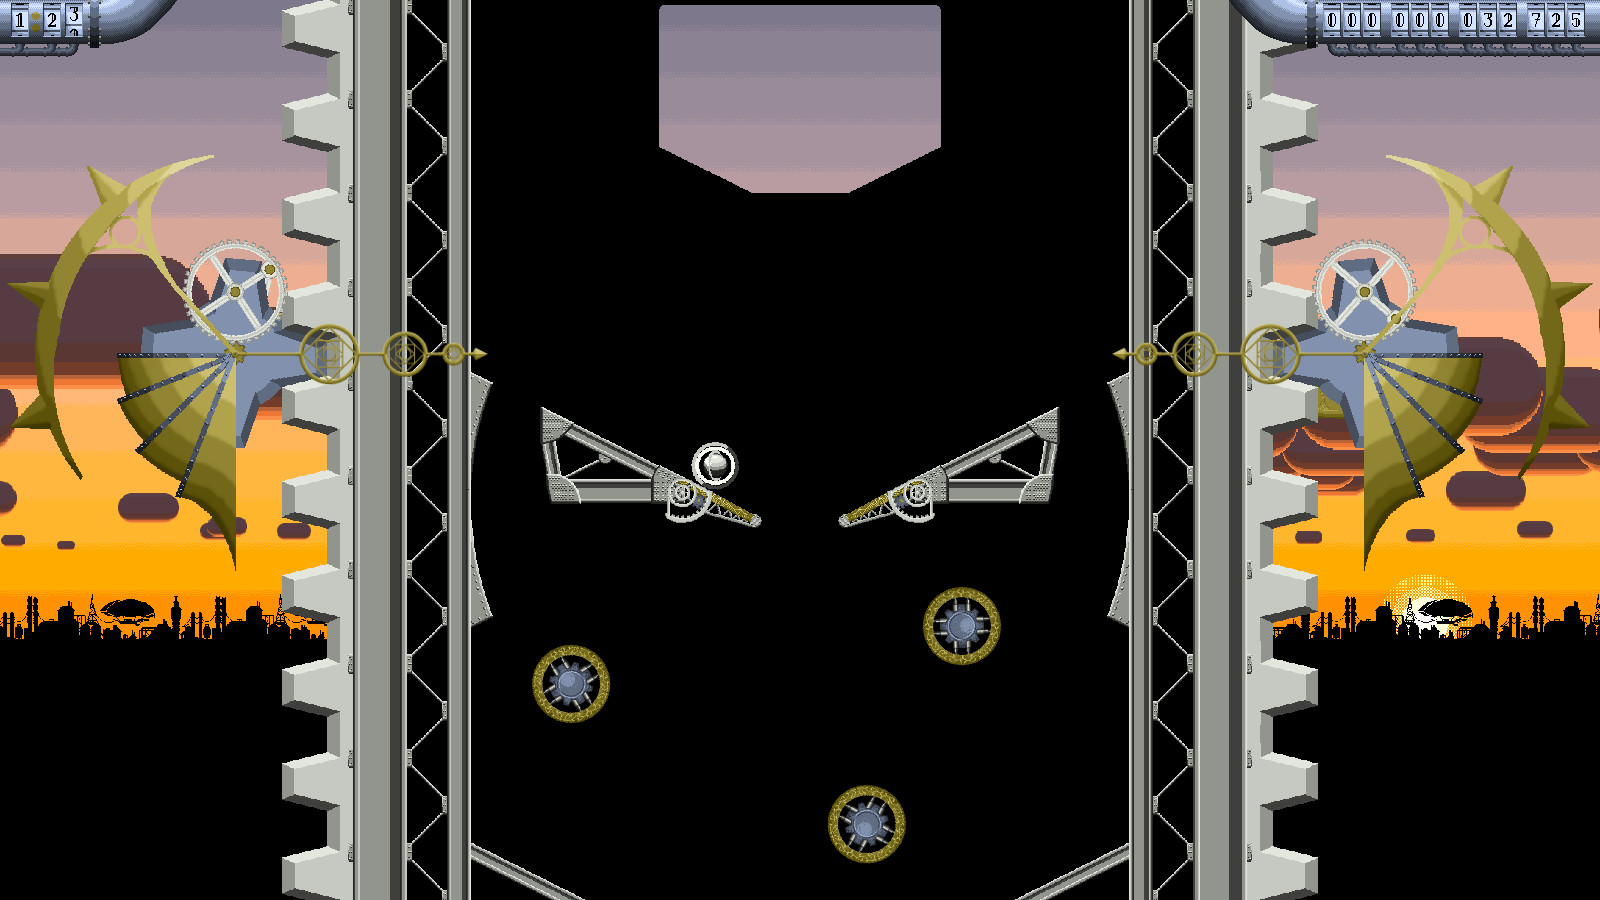 Super Steampunk Pinball 2D screenshot